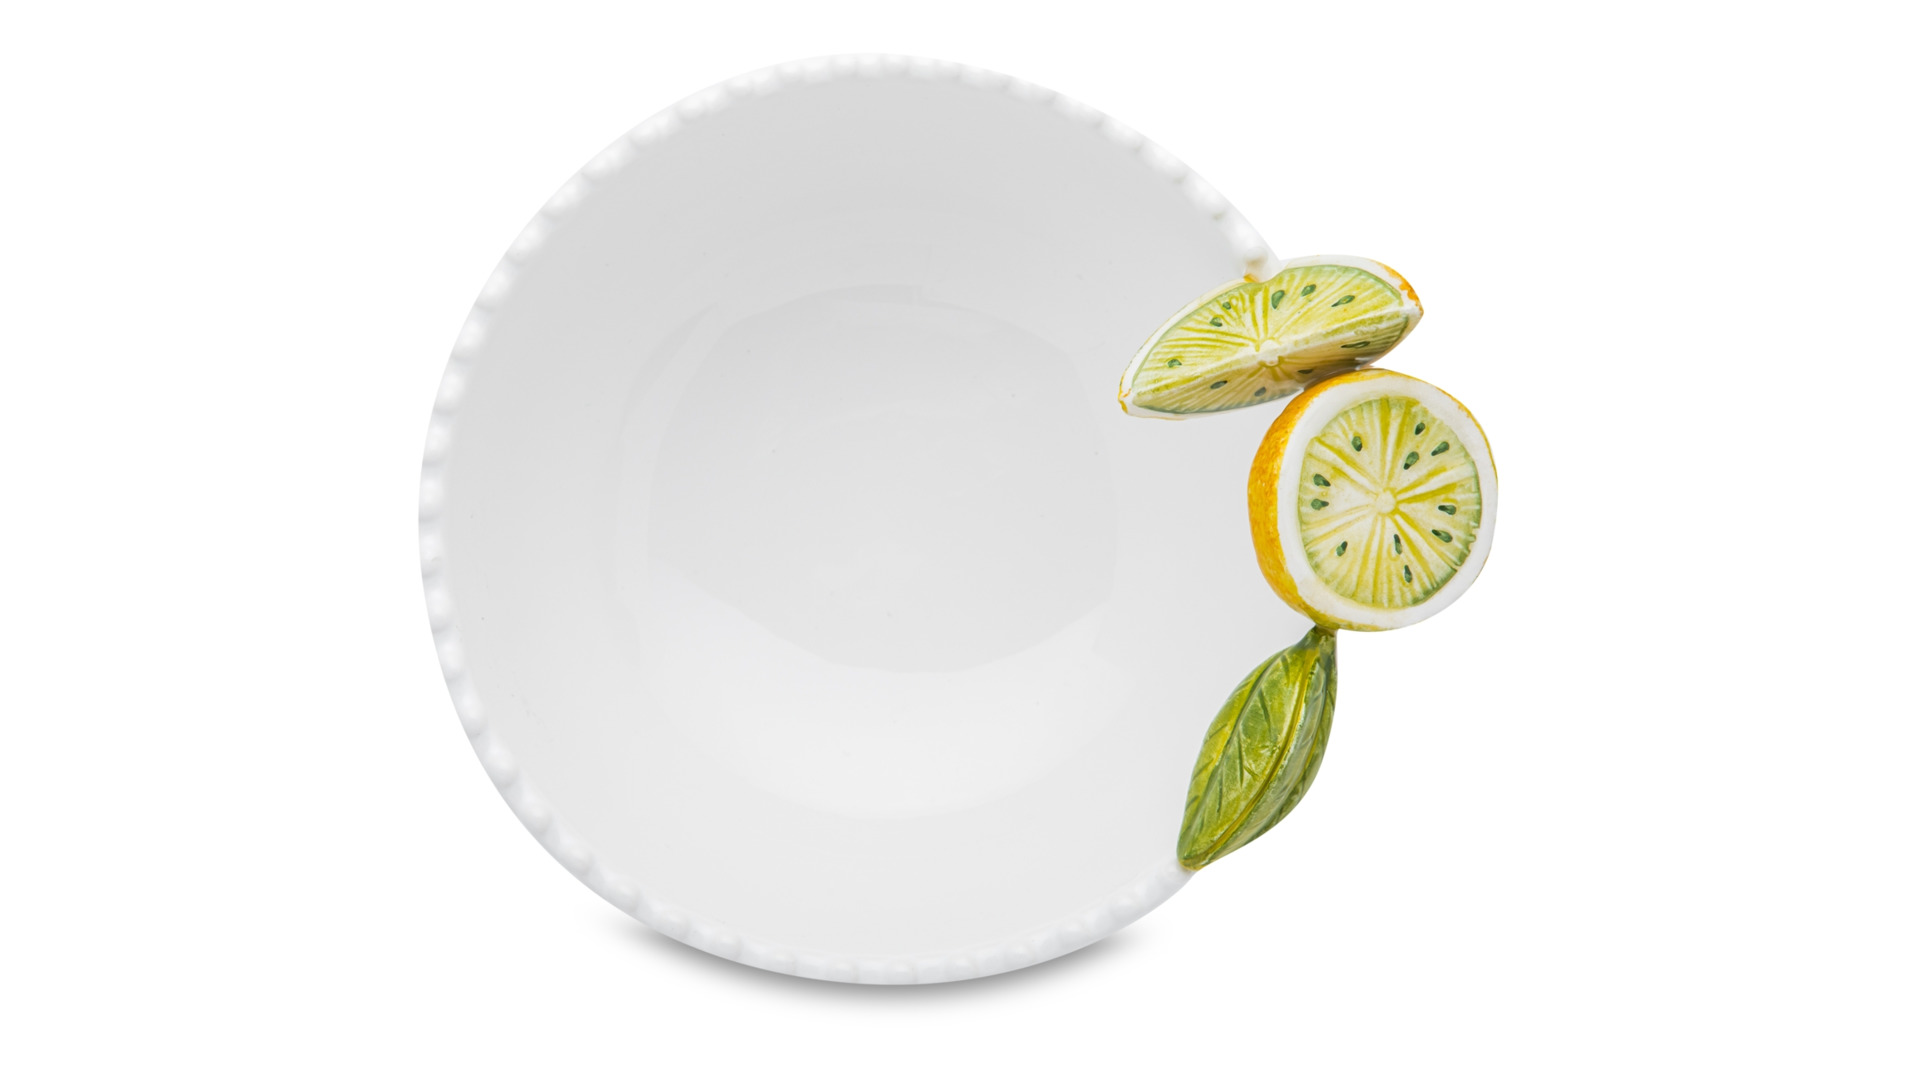 Салатник порционный Edelweiss Лимоны 18 см, h7 см, керамика